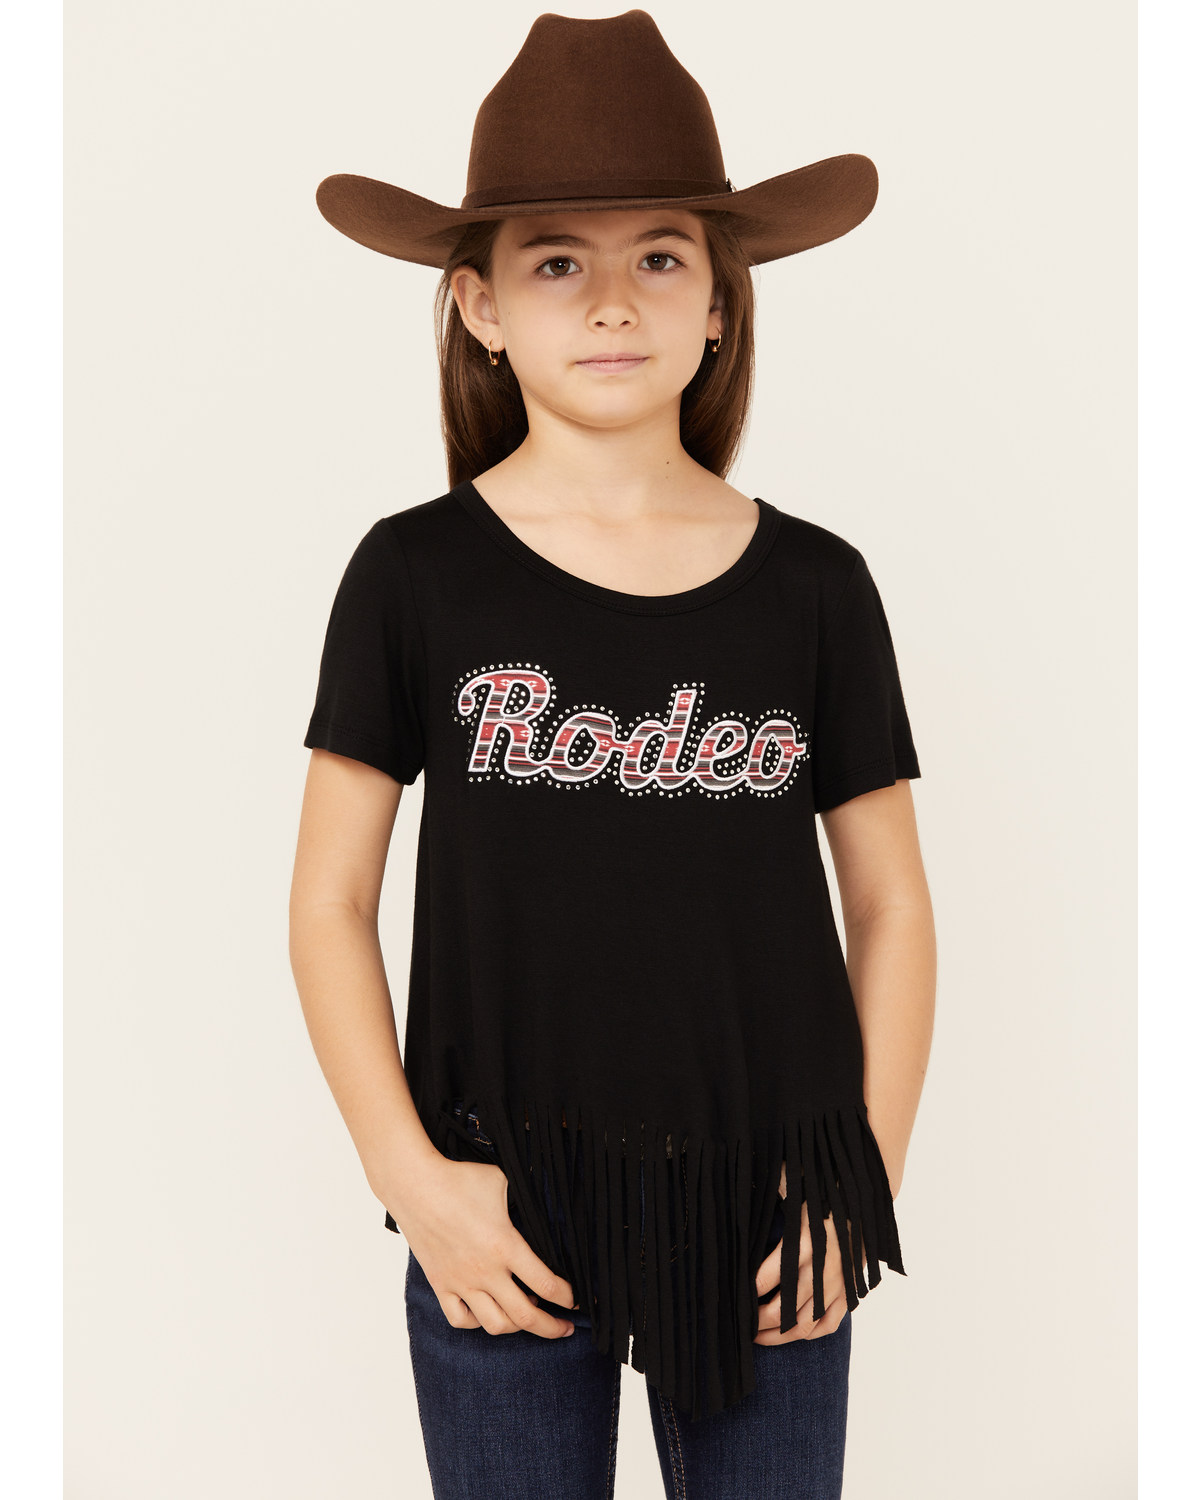 Cowgirl Hardware Girls' Rodeo Fringe Short Sleeve Tee